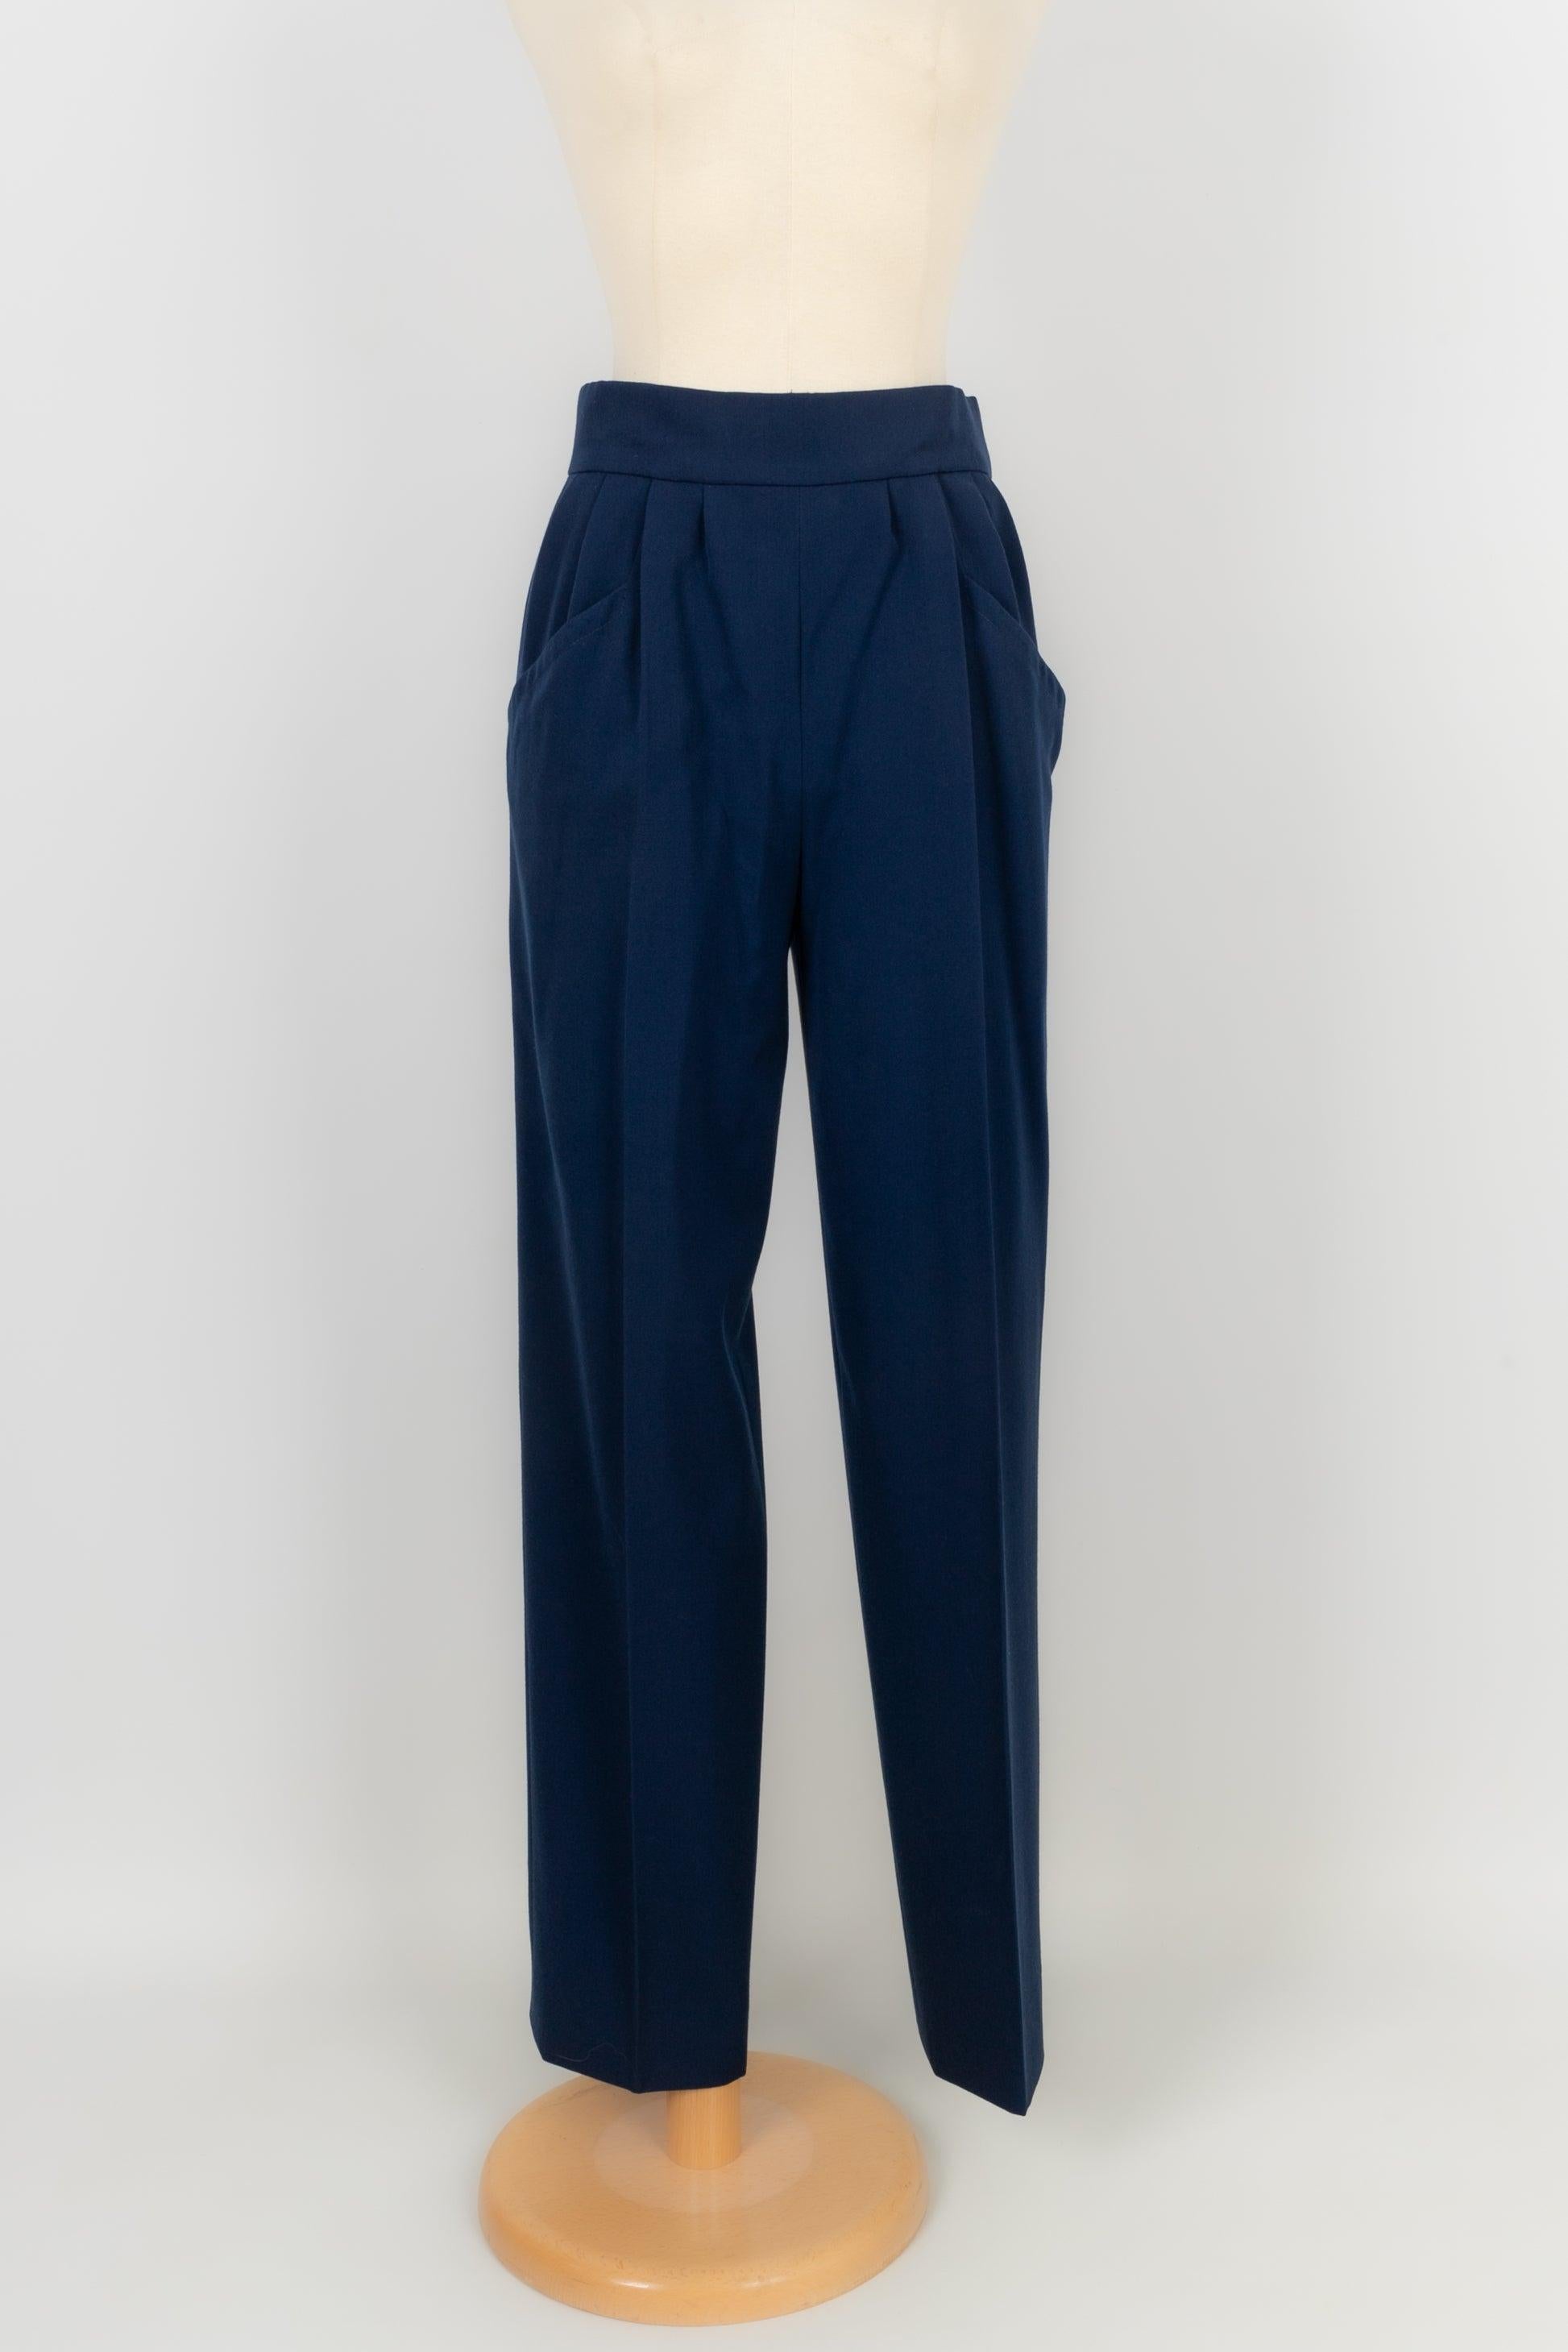 Costume pantalon haute couture Yves Saint Laurent bleu 36FR/38FR 8